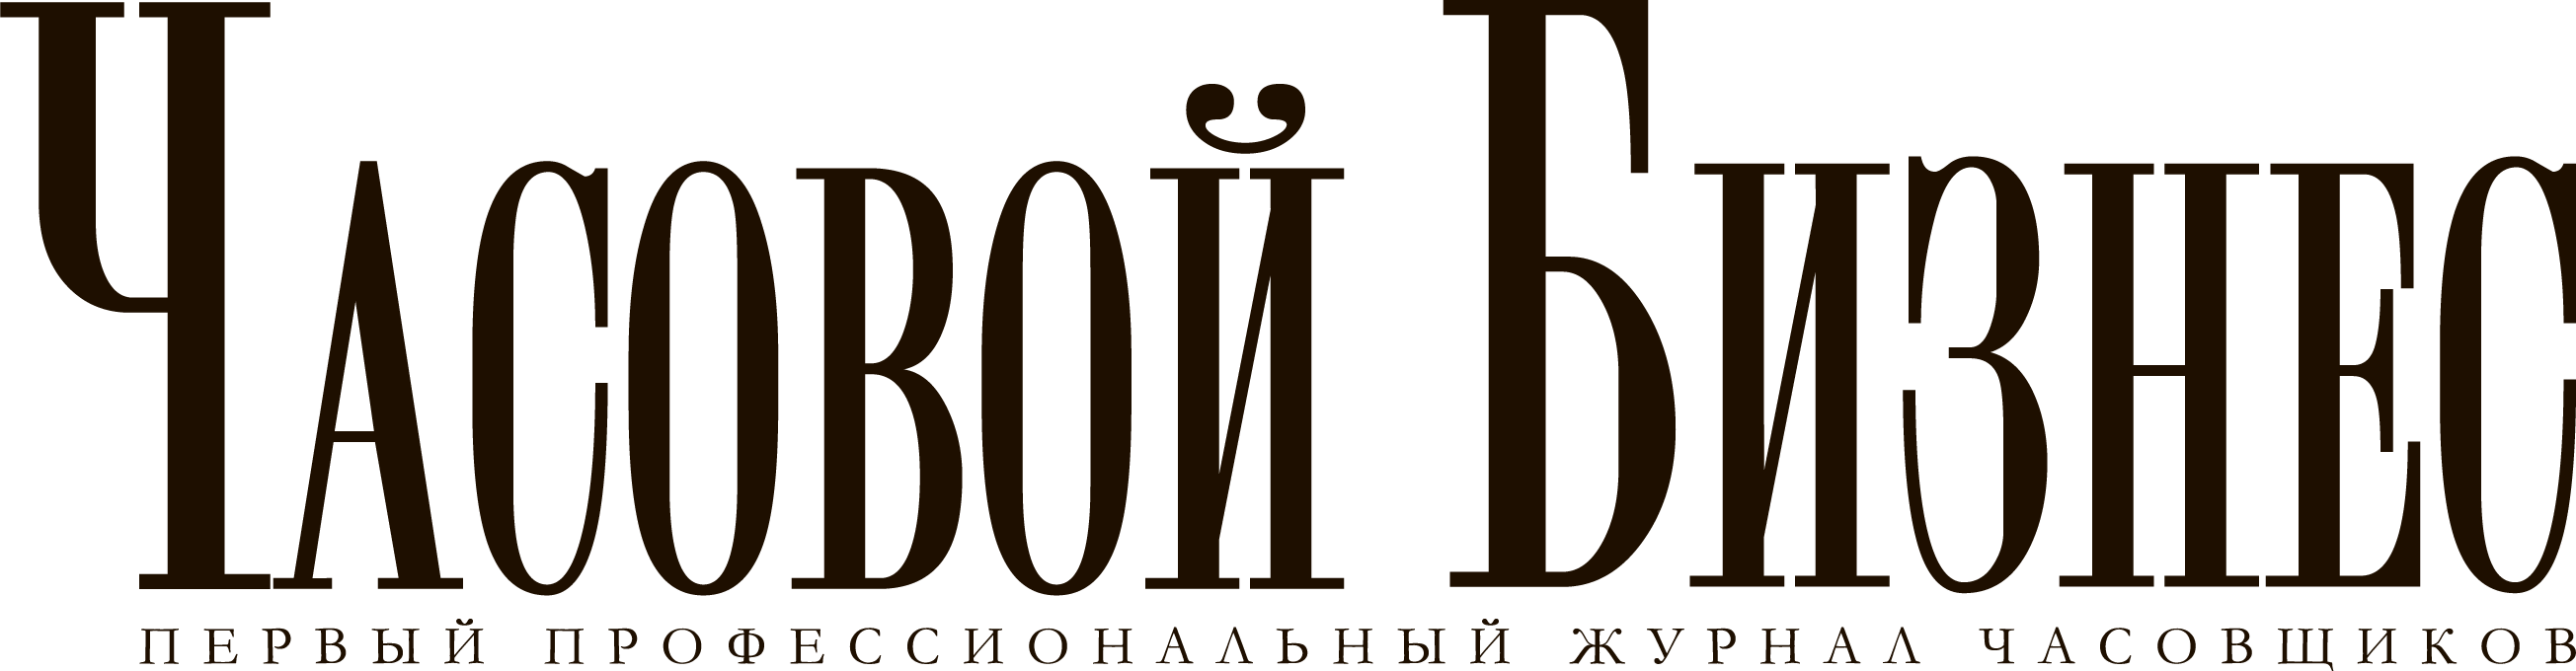 Часовой бизнес_logo